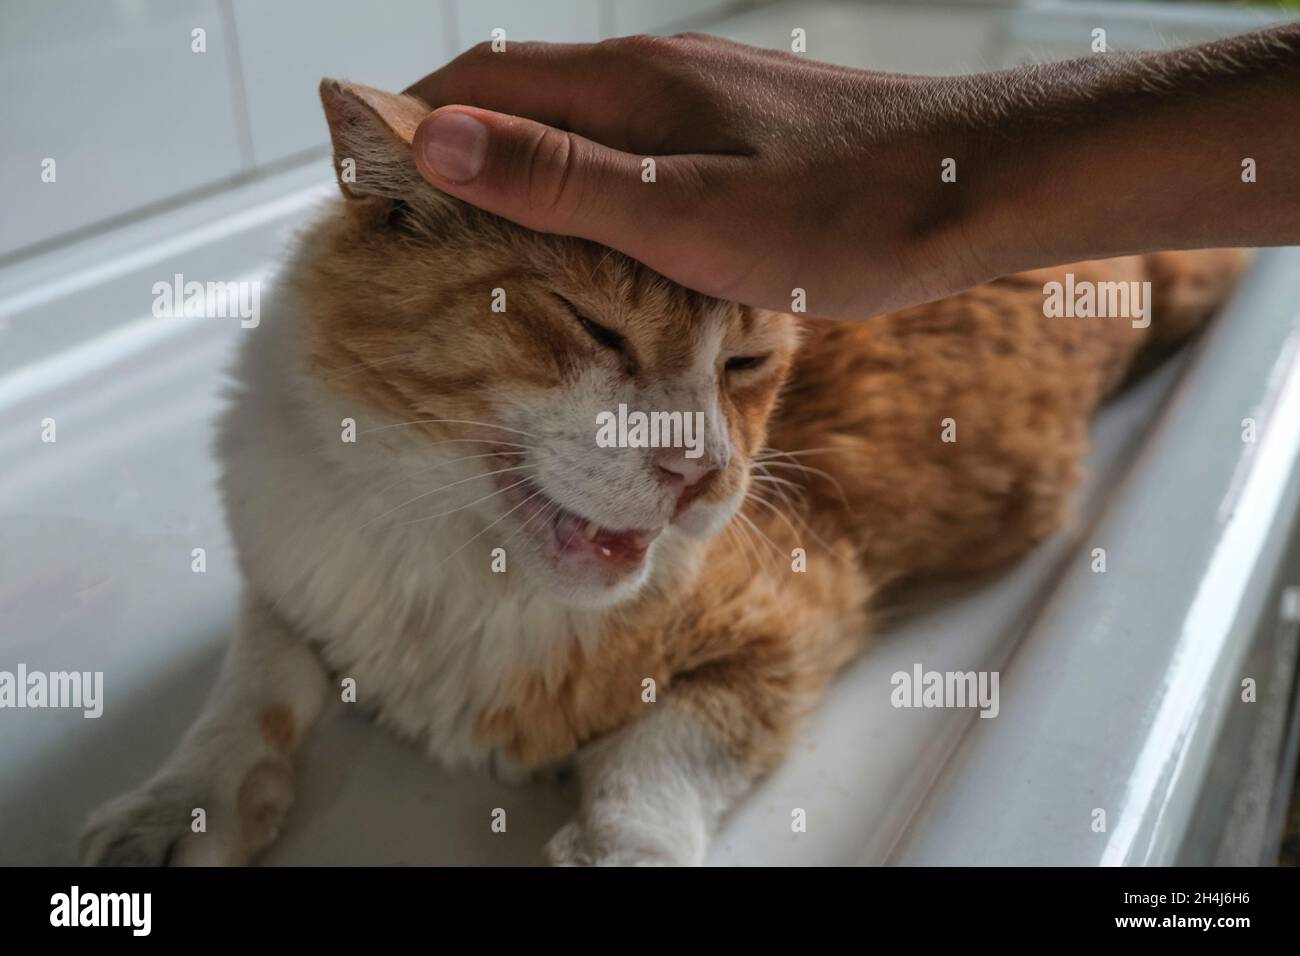 Gros plan de chat au gingembre en forme de mains.Museau de chat heureux.Animaux domestiques en gros plan. Banque D'Images